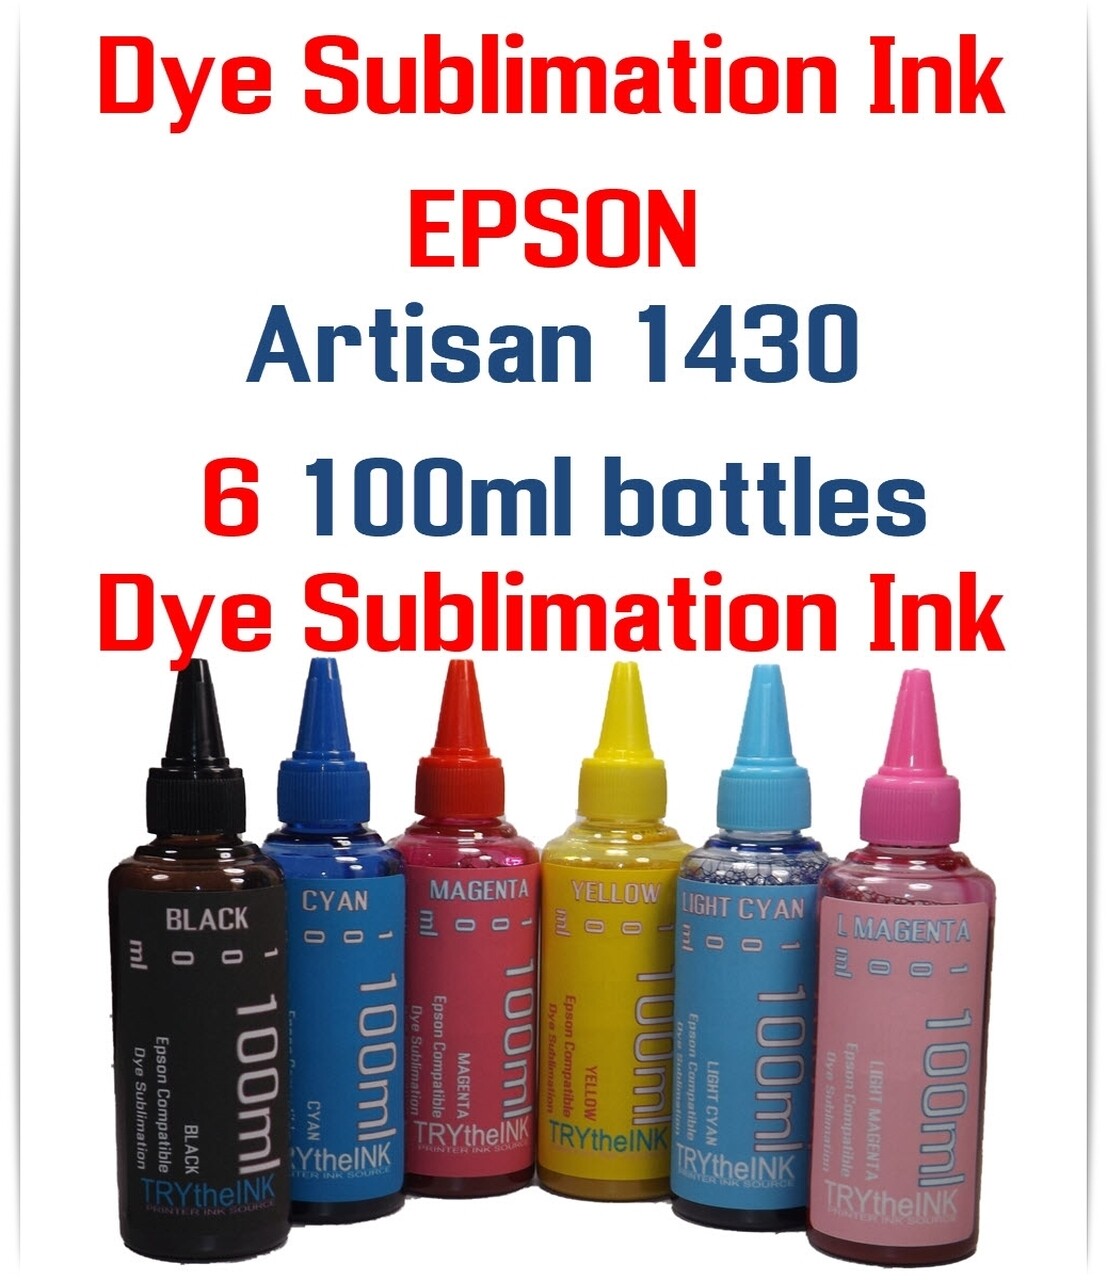 Dye Sublimation Ink 6- 100ml bottles for Epson Artisan 1430 Printer